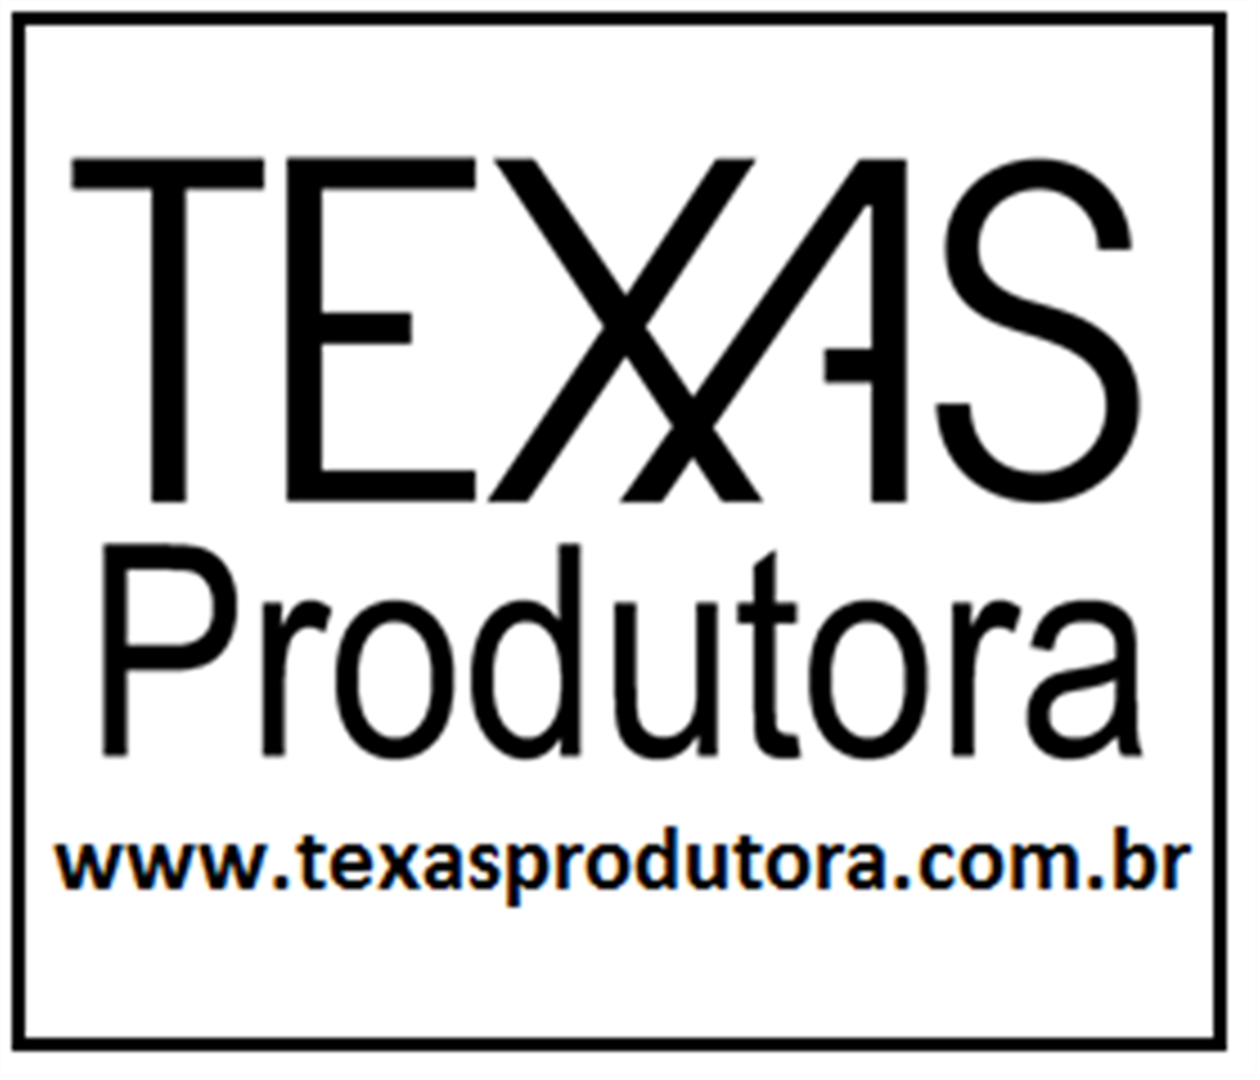 Texas produtora - Sonorização, iluminação e eventos logo